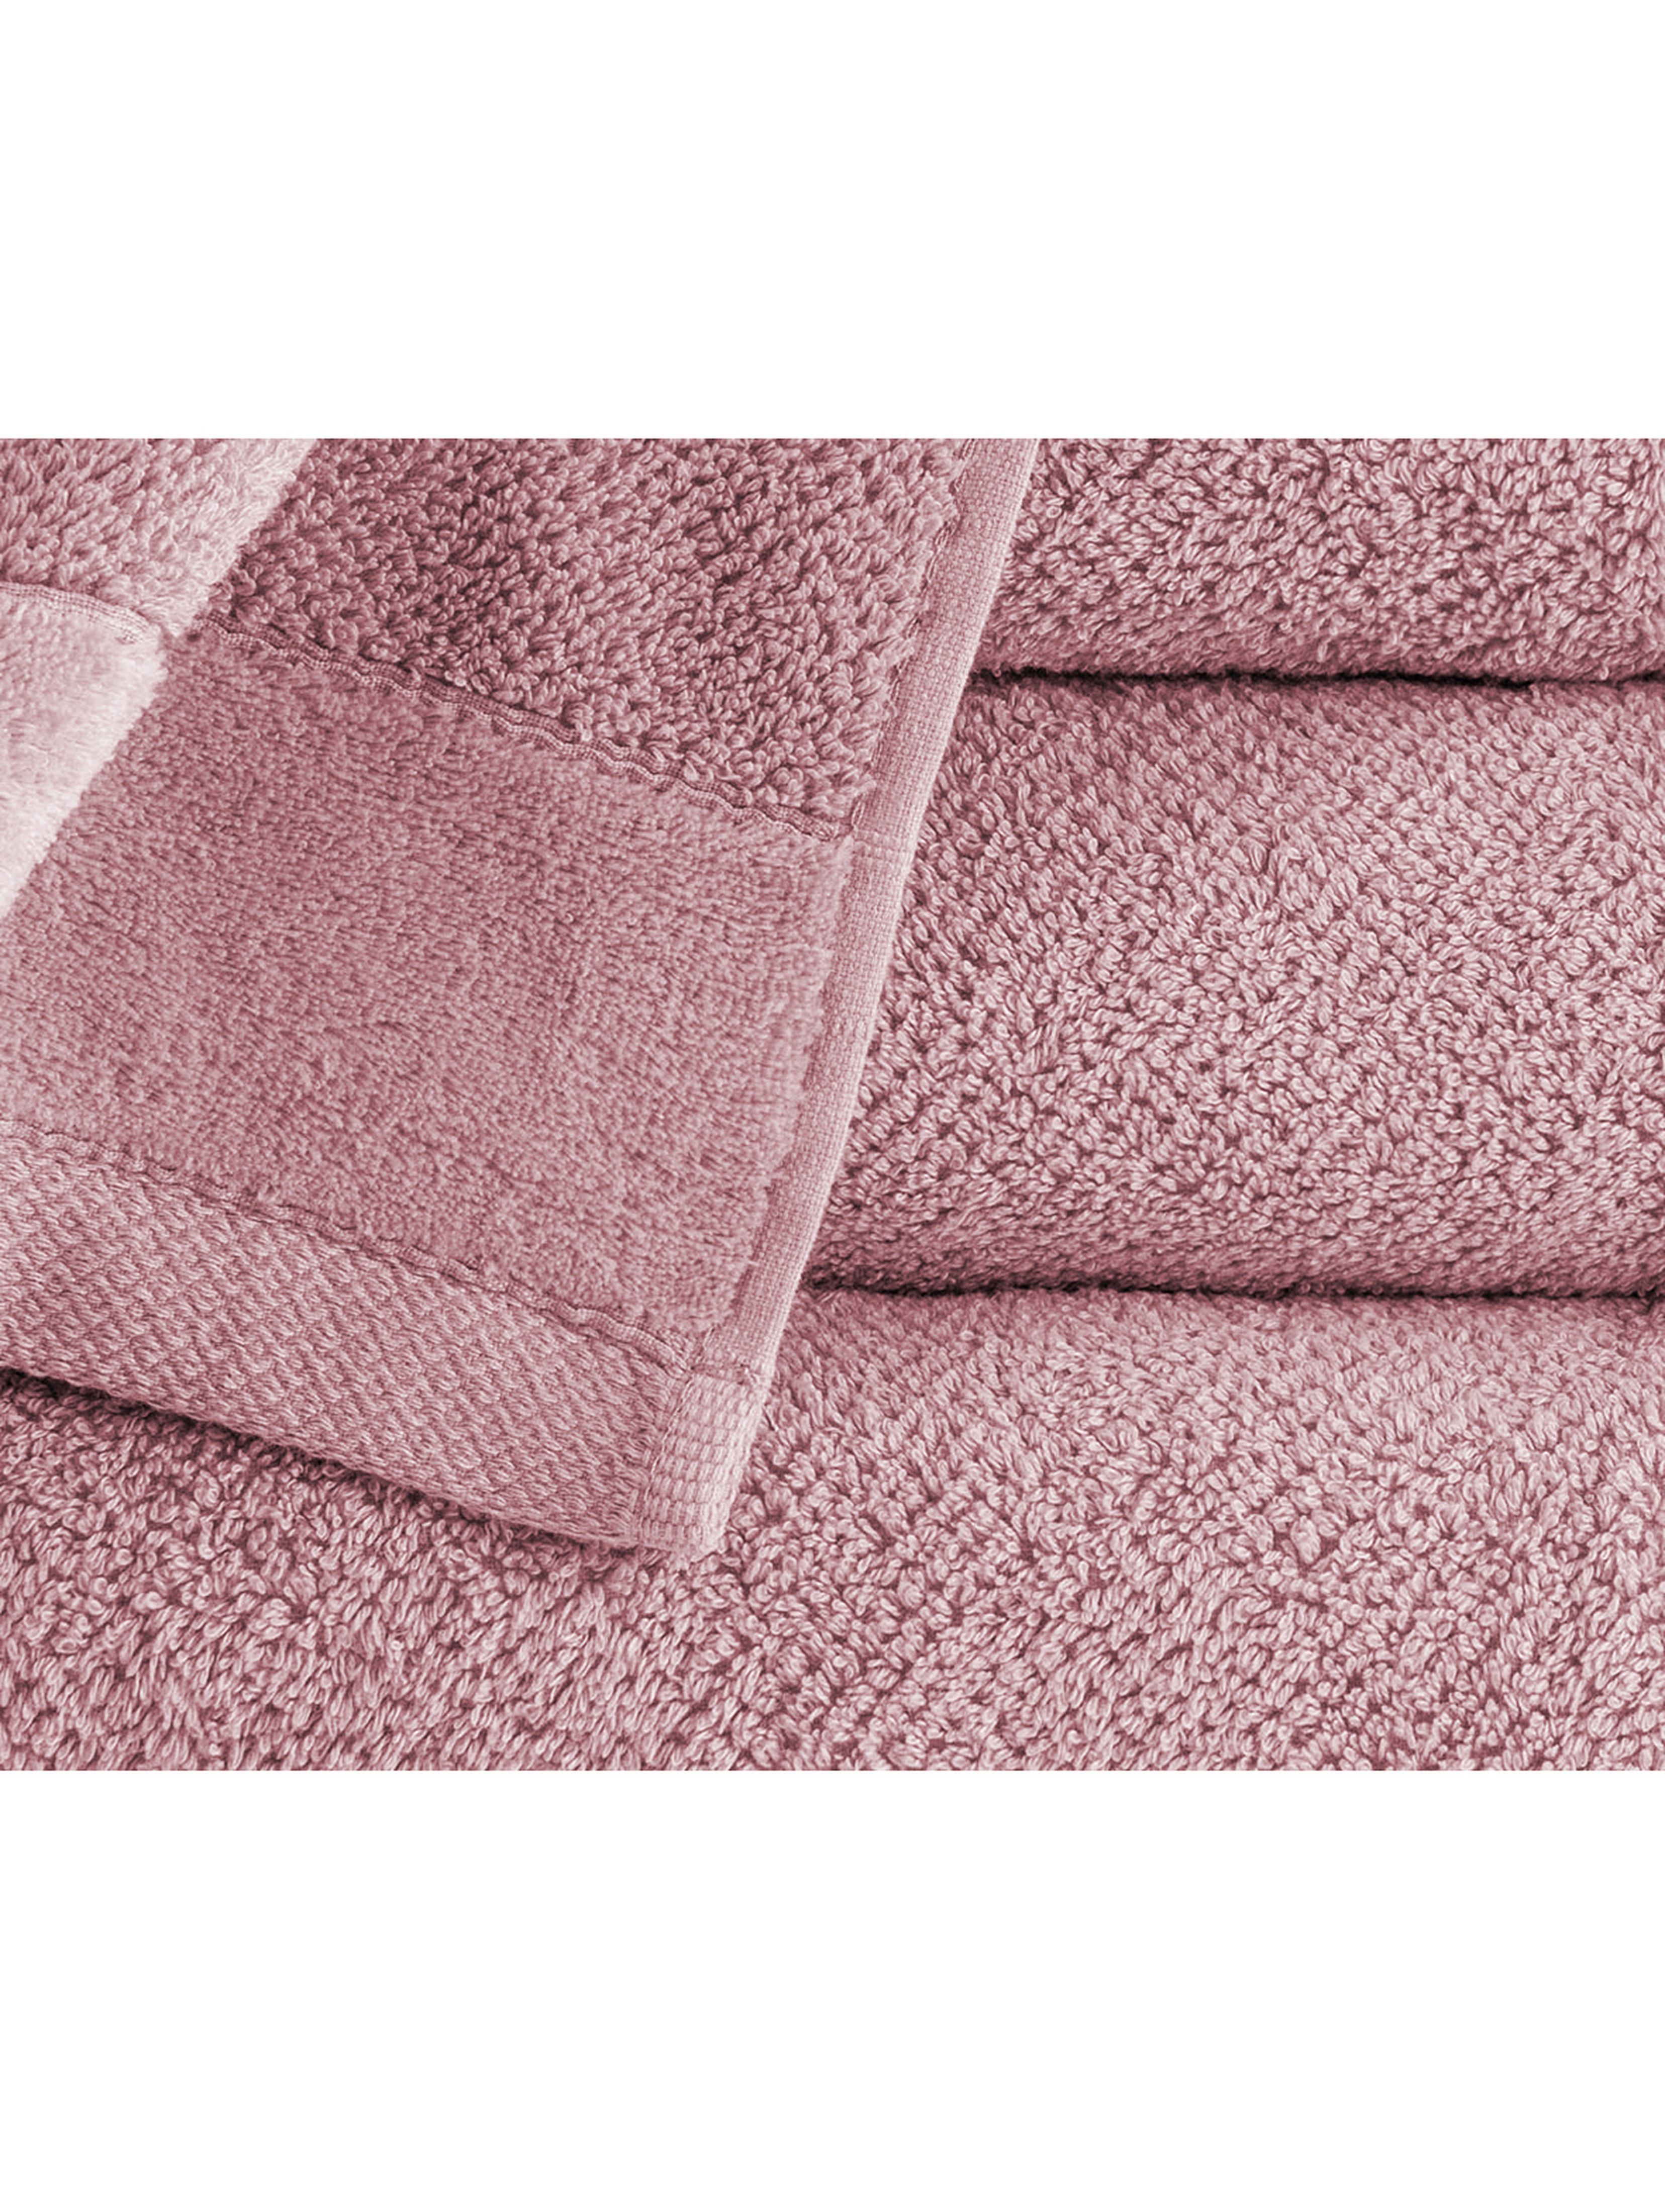 Ręcznik VITO różowy 1 szt. 50x90  cm